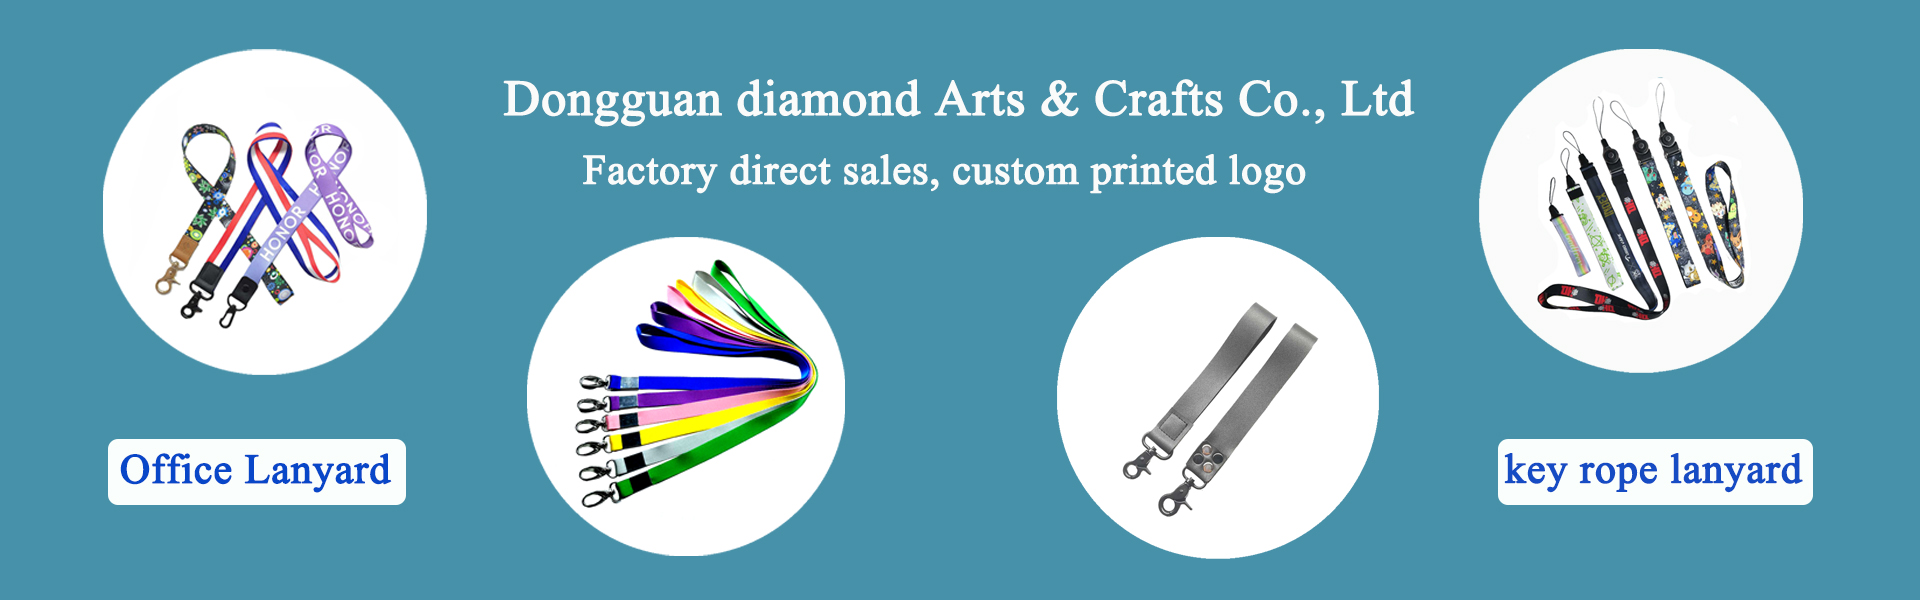 lanyard, tilbehør til beklædningsgenstande, tilbehør til selskabsdyr,Dongguan diamond Arts & Crafts Co., Ltd